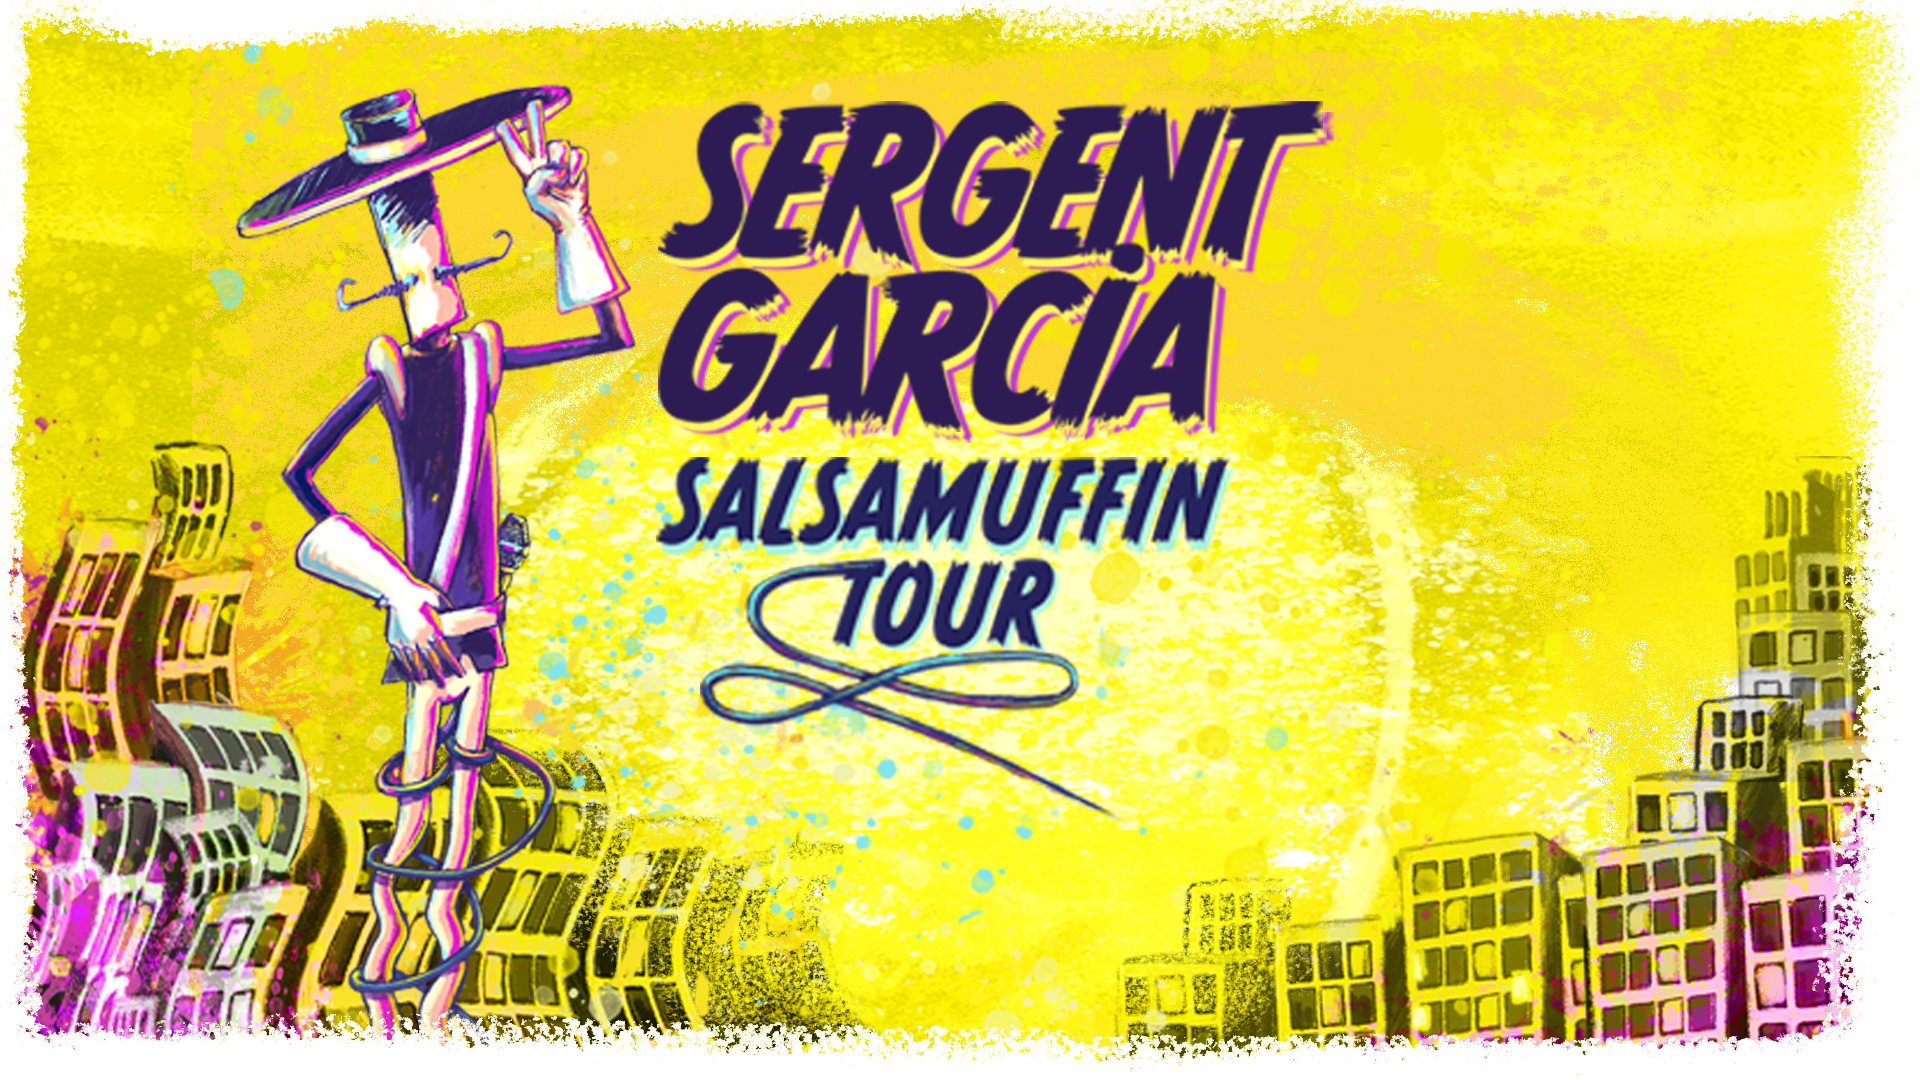 Salsamuffin tour Sergent Garcia